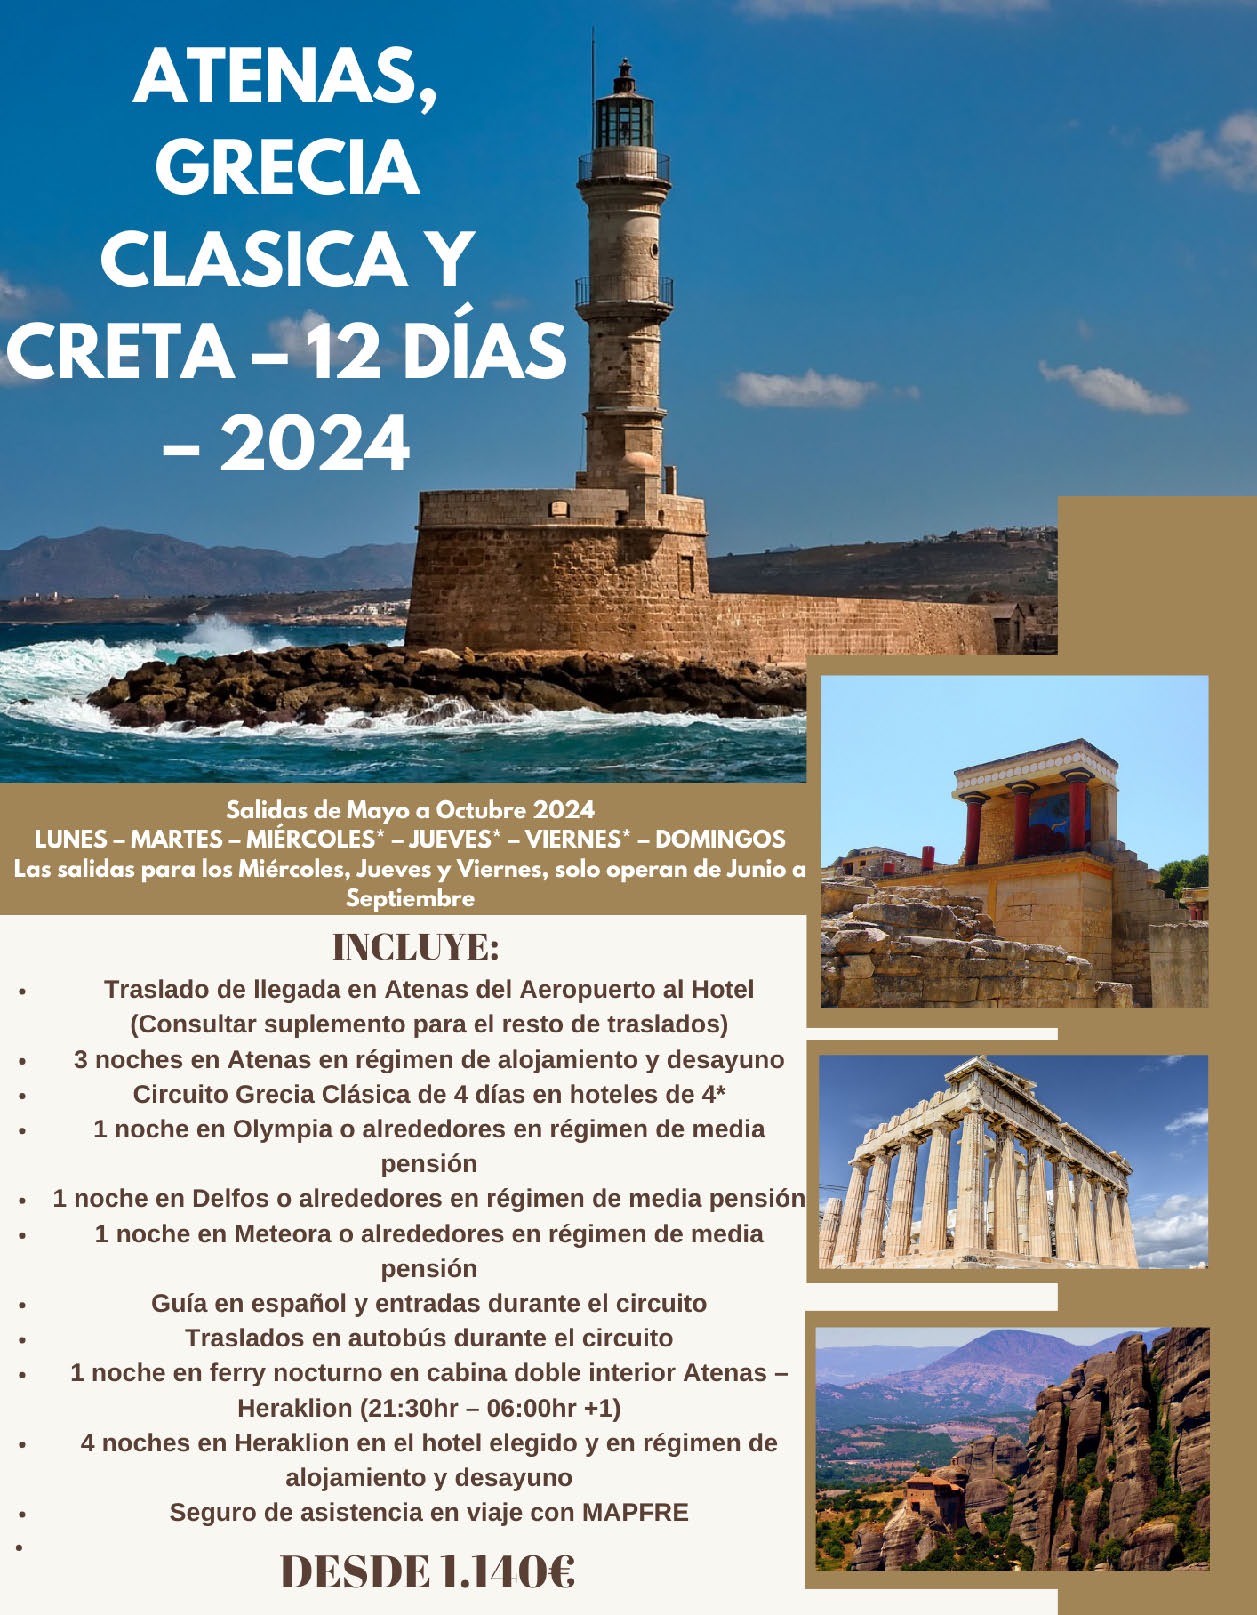 Ofertas Grecia Vacaciones circuito Atenas Grecia Clasica y Creta 12 dias salidas Mayo a Octubre 2024 sin vuelos